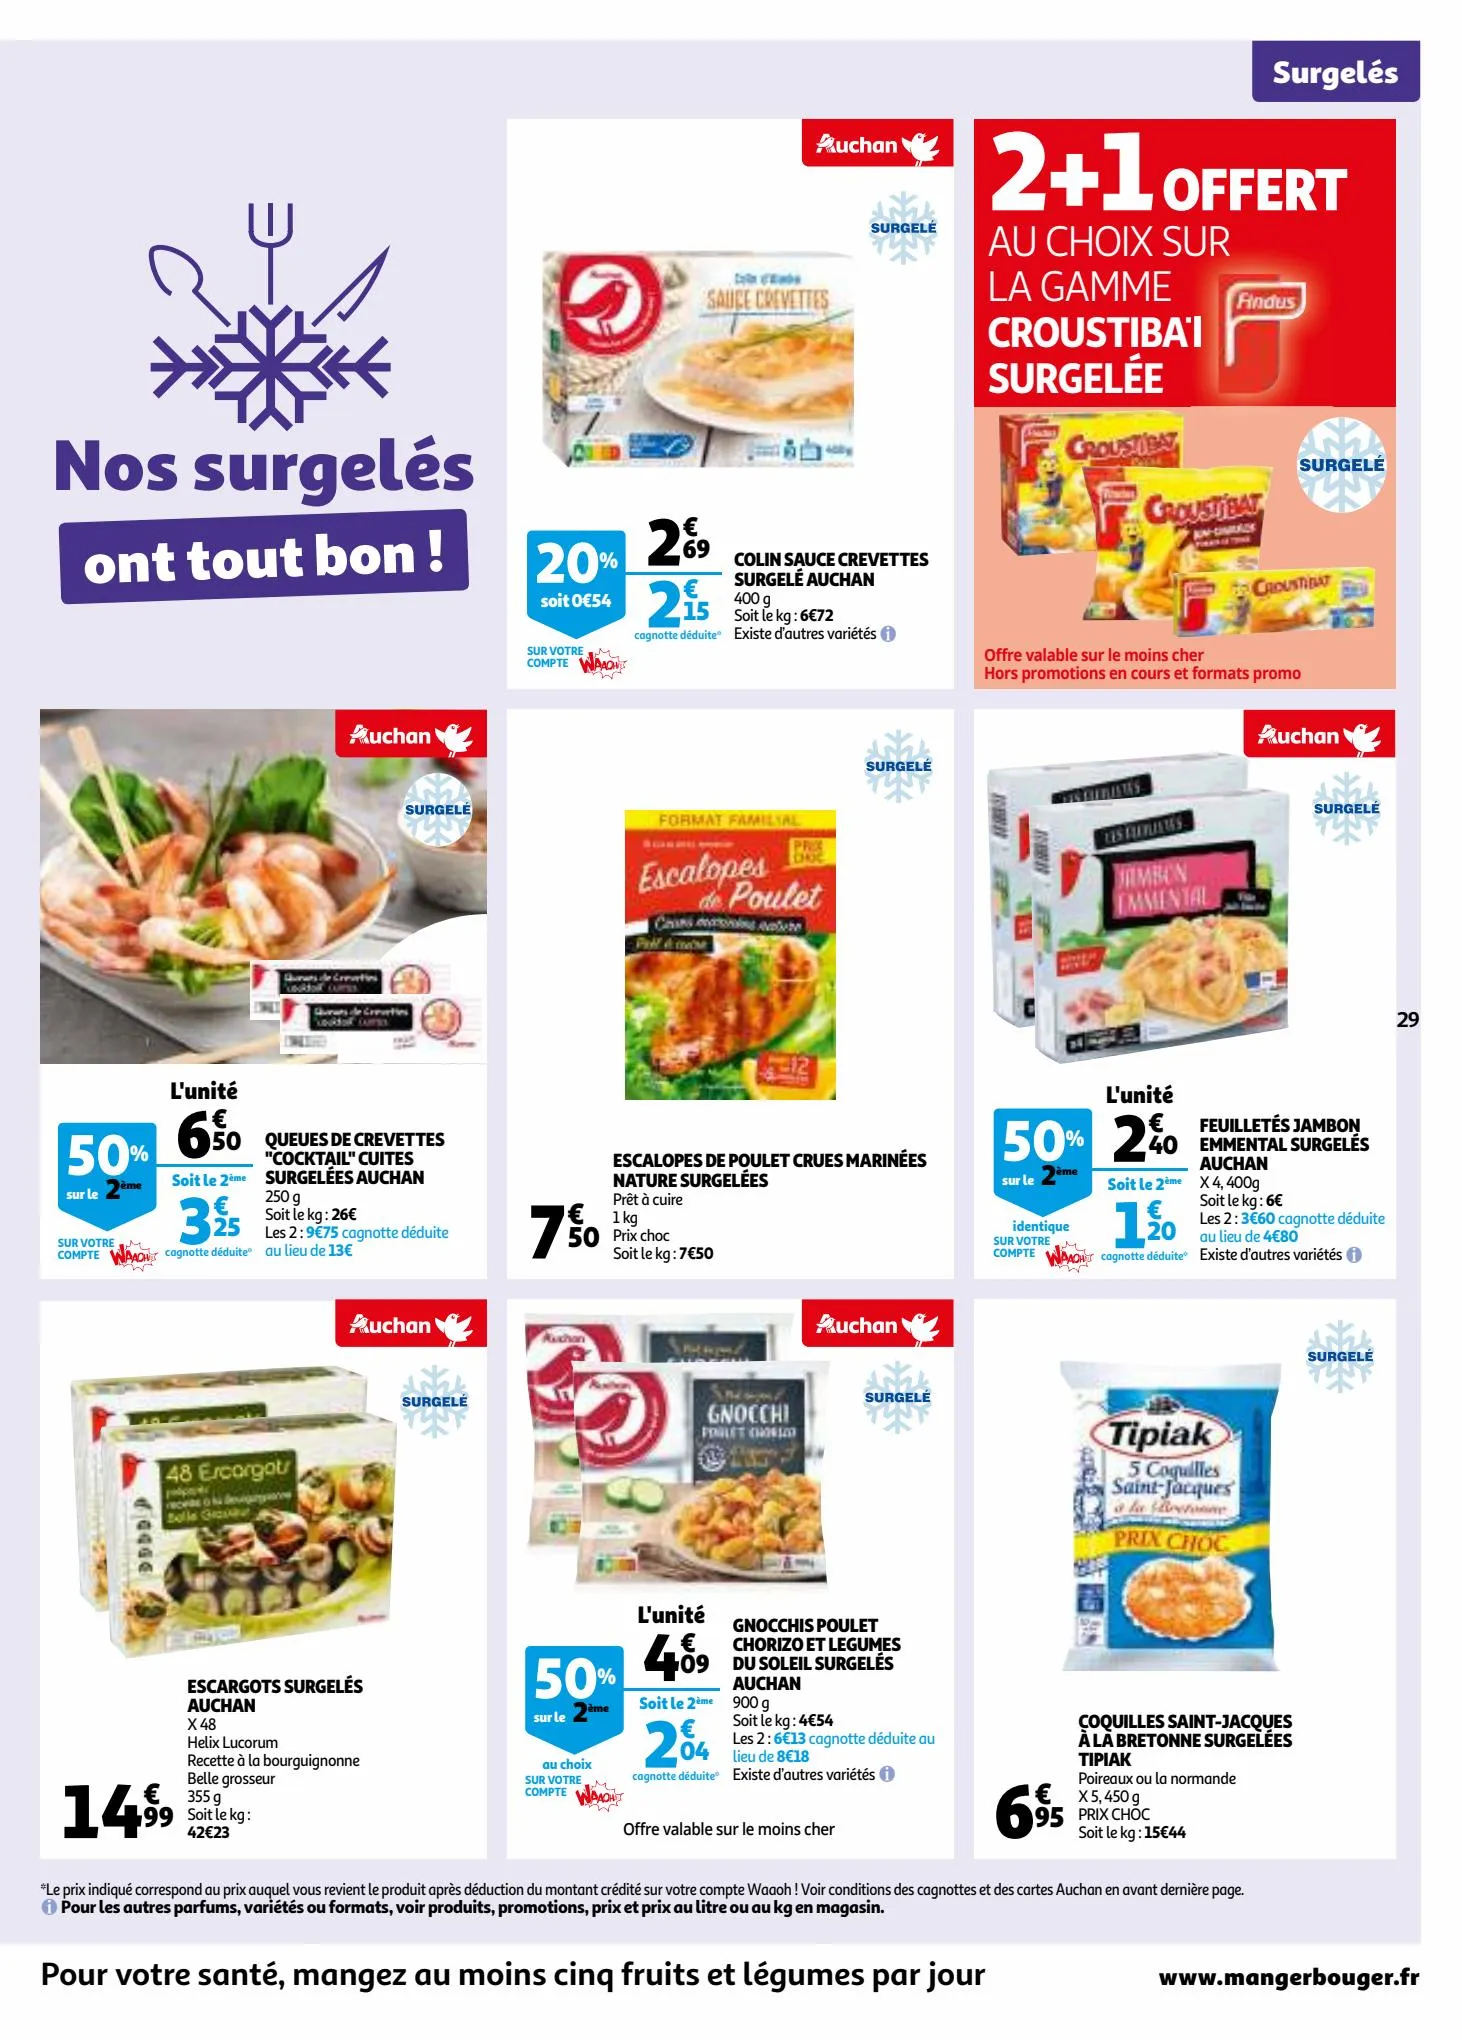 Catalogue 25 jours Auchan, page 00029